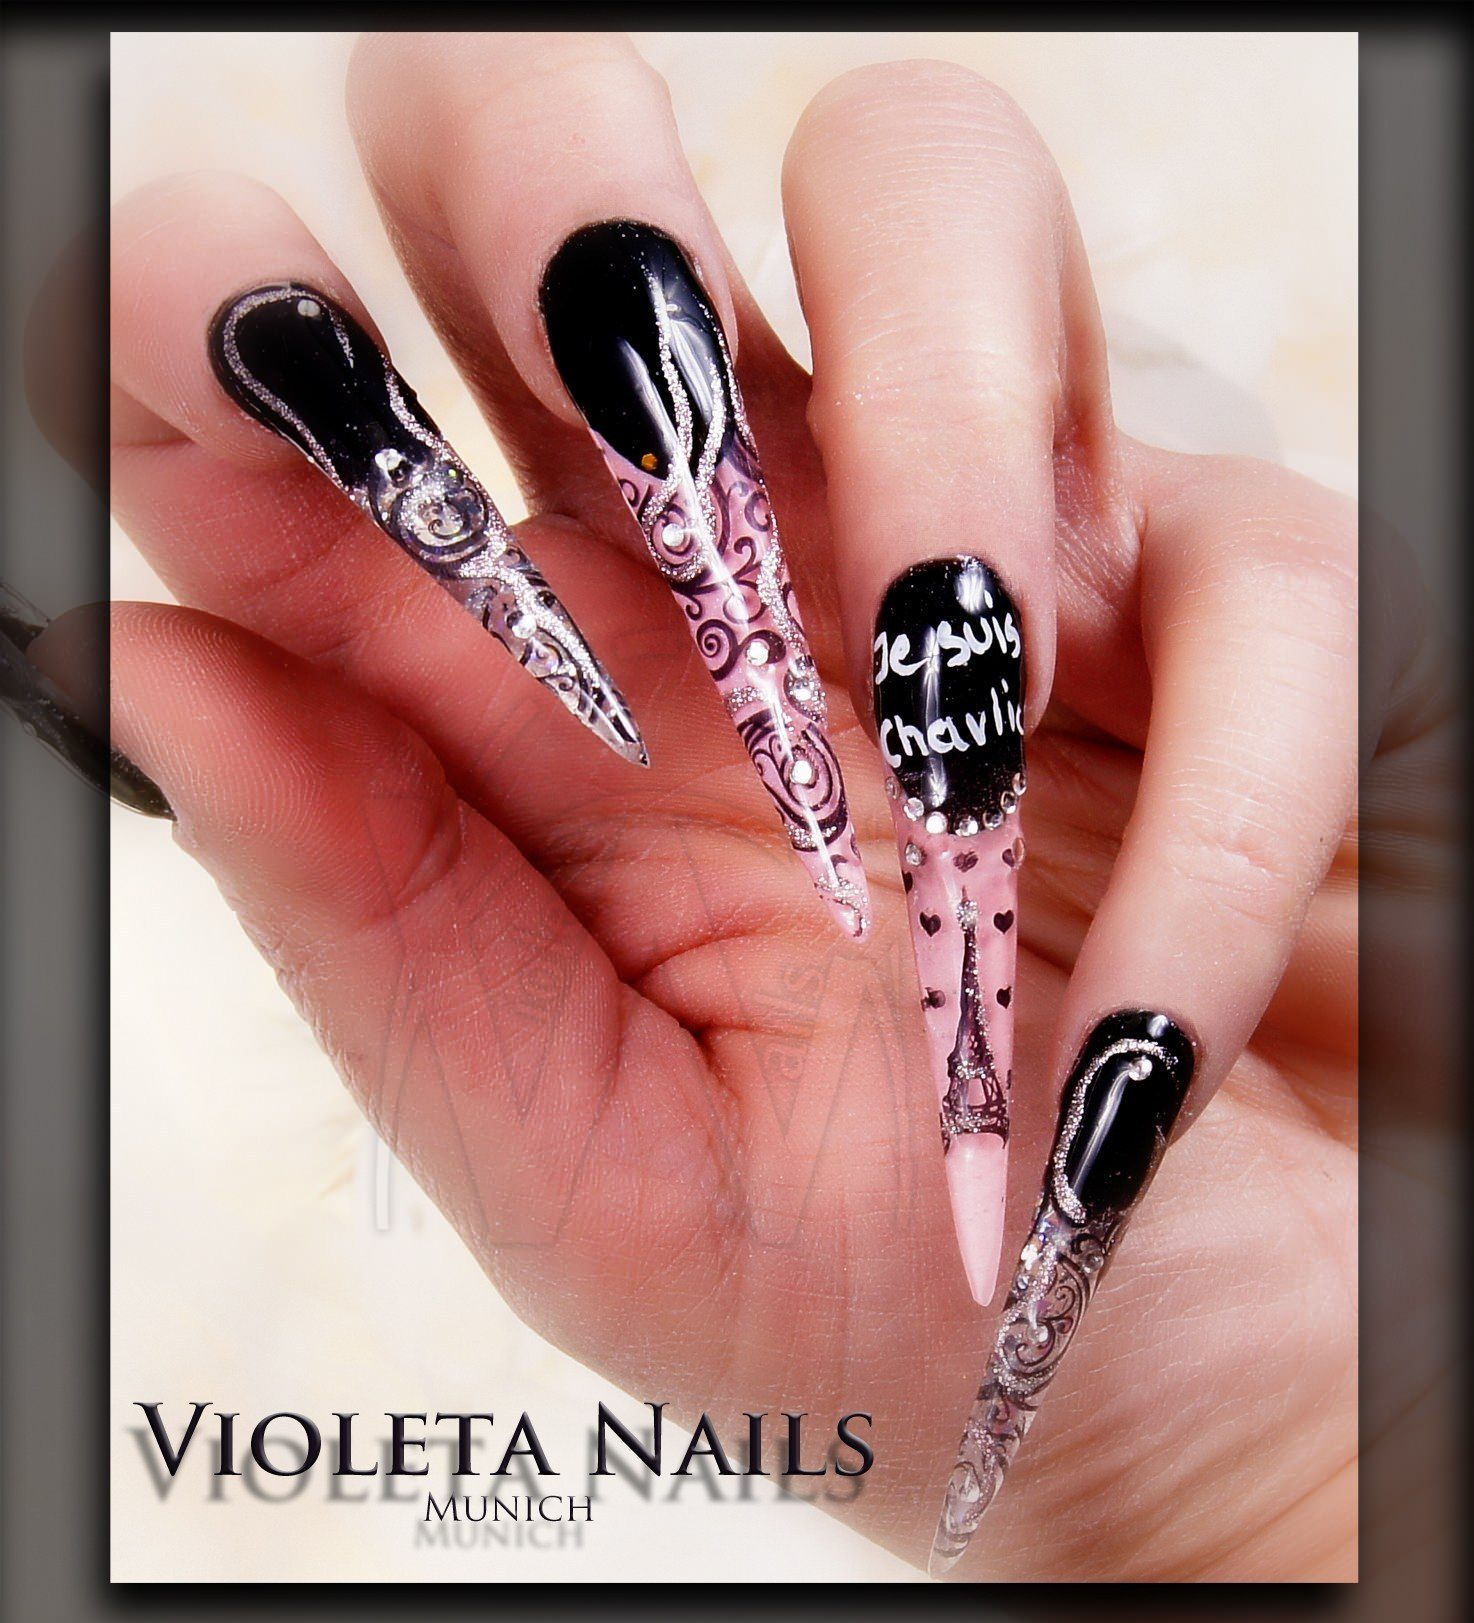 Natural nails, gel polish